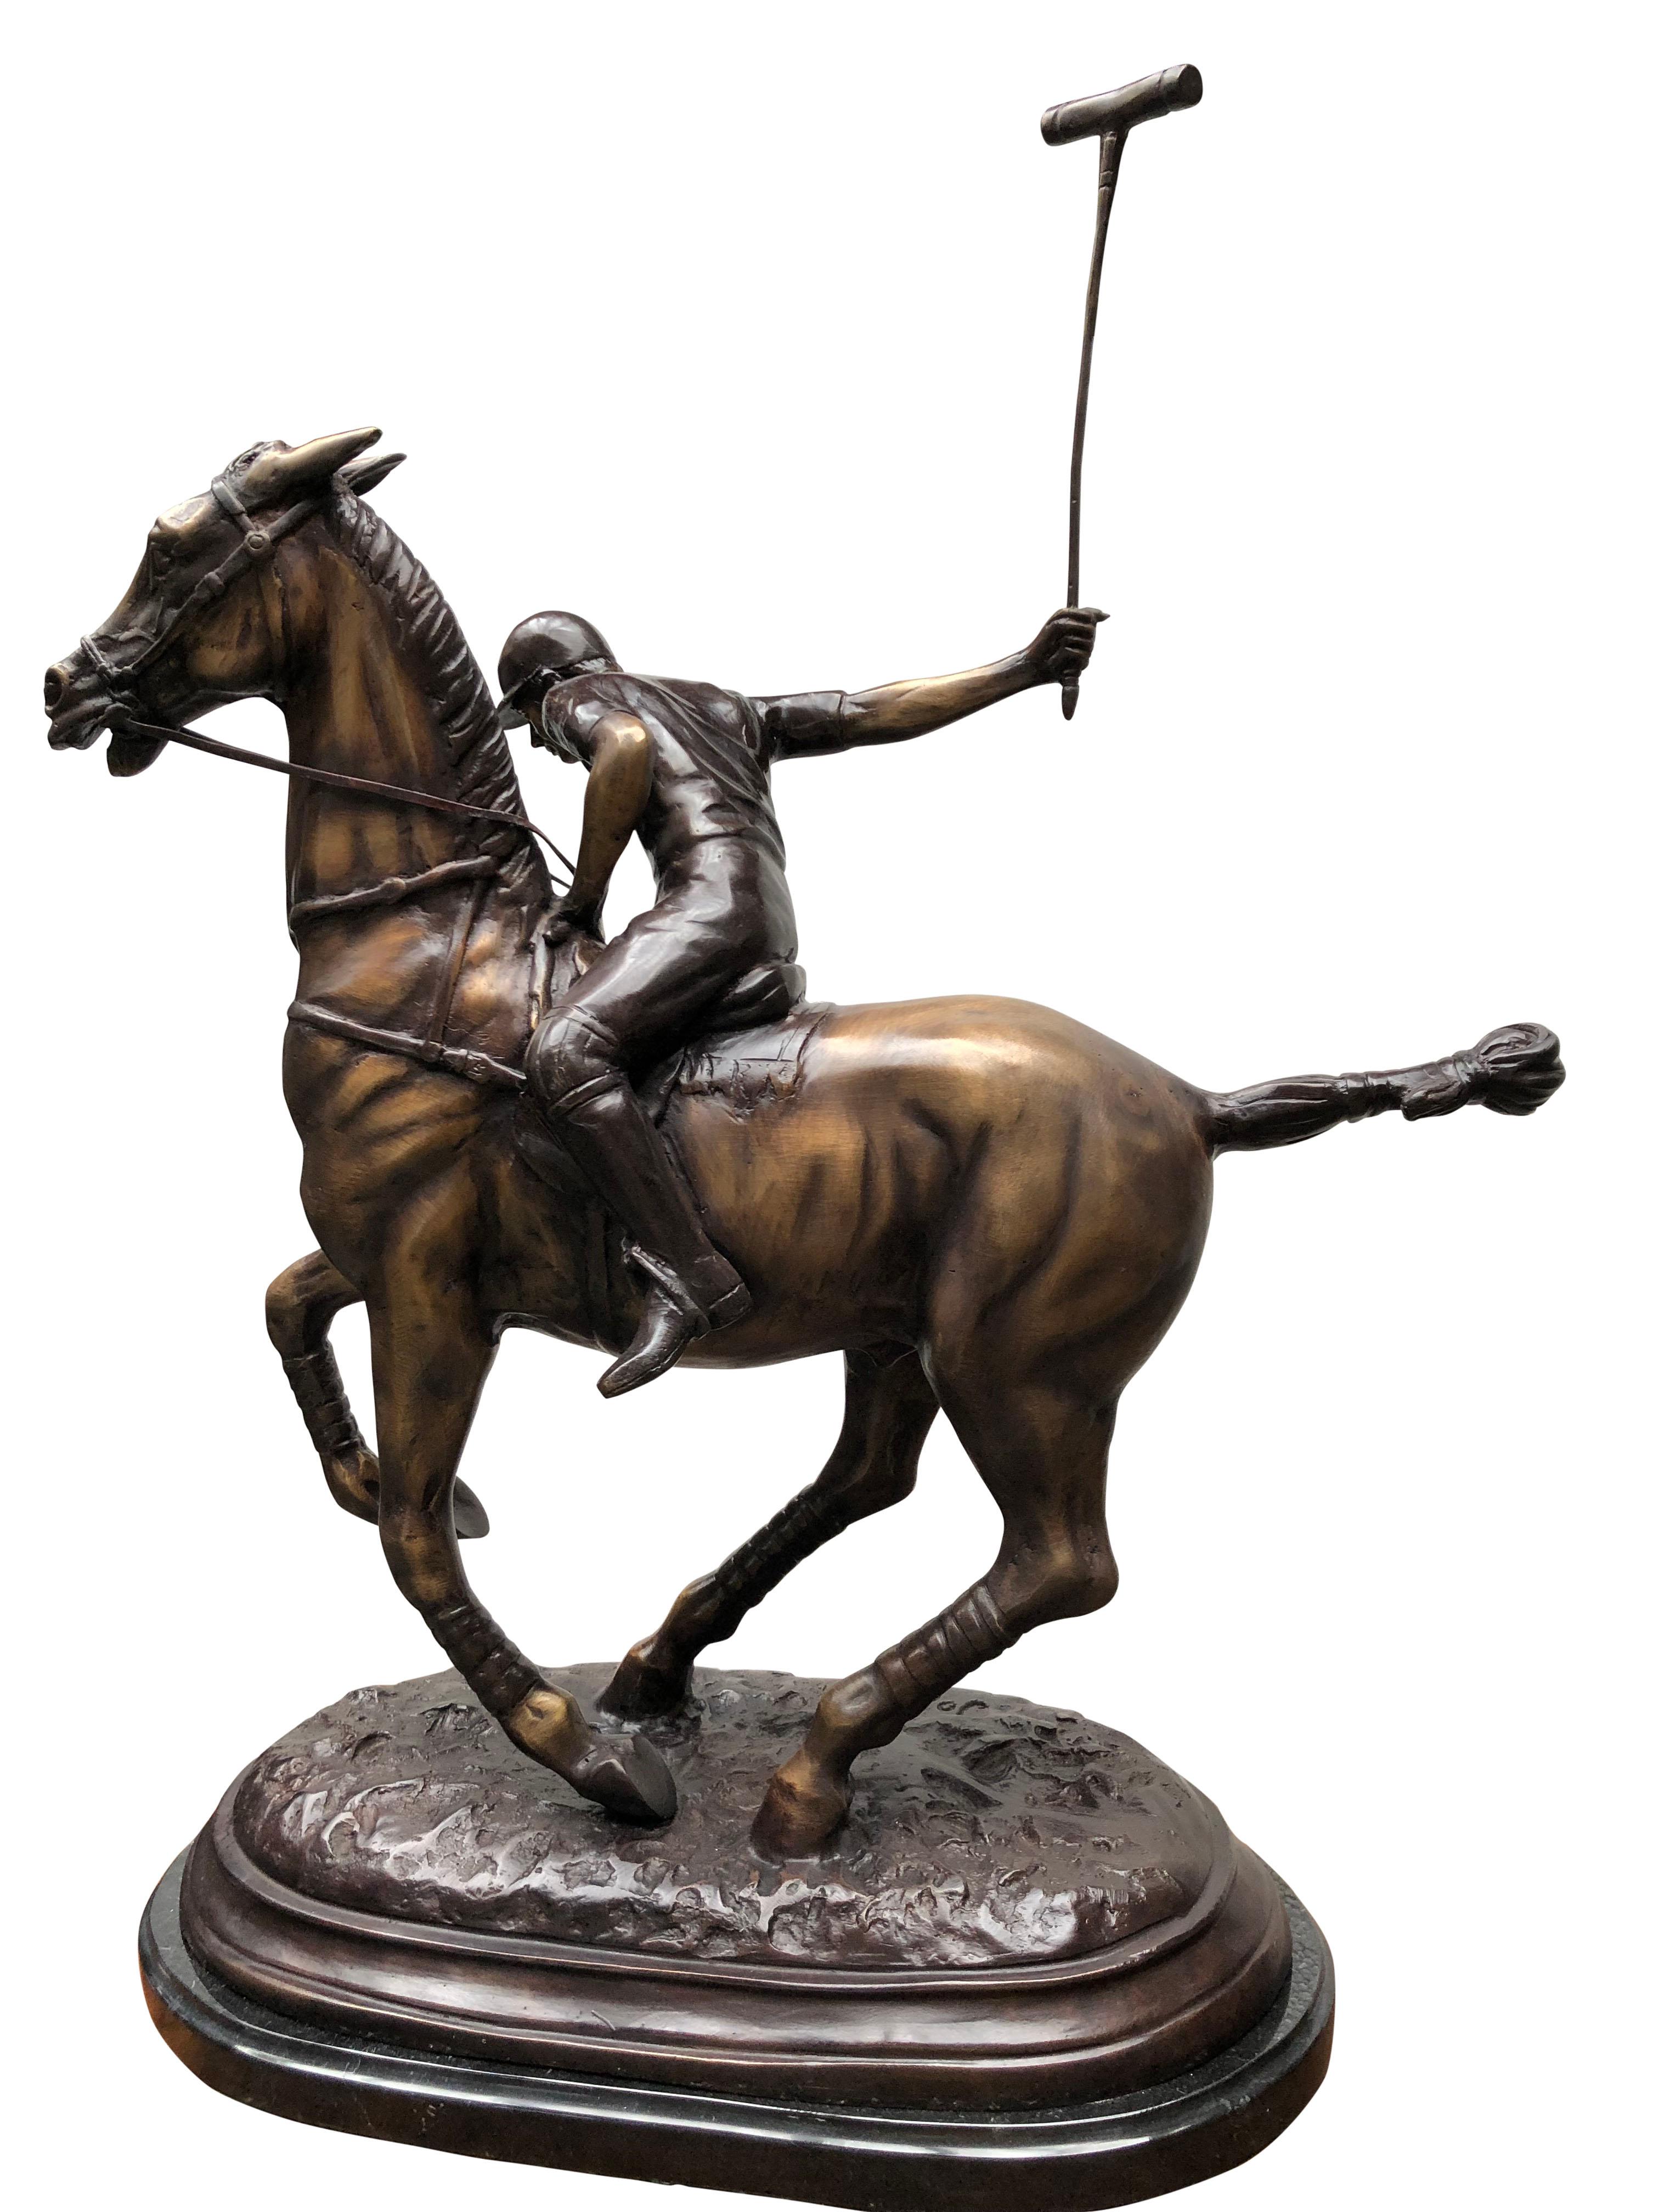 bronze polo player statue